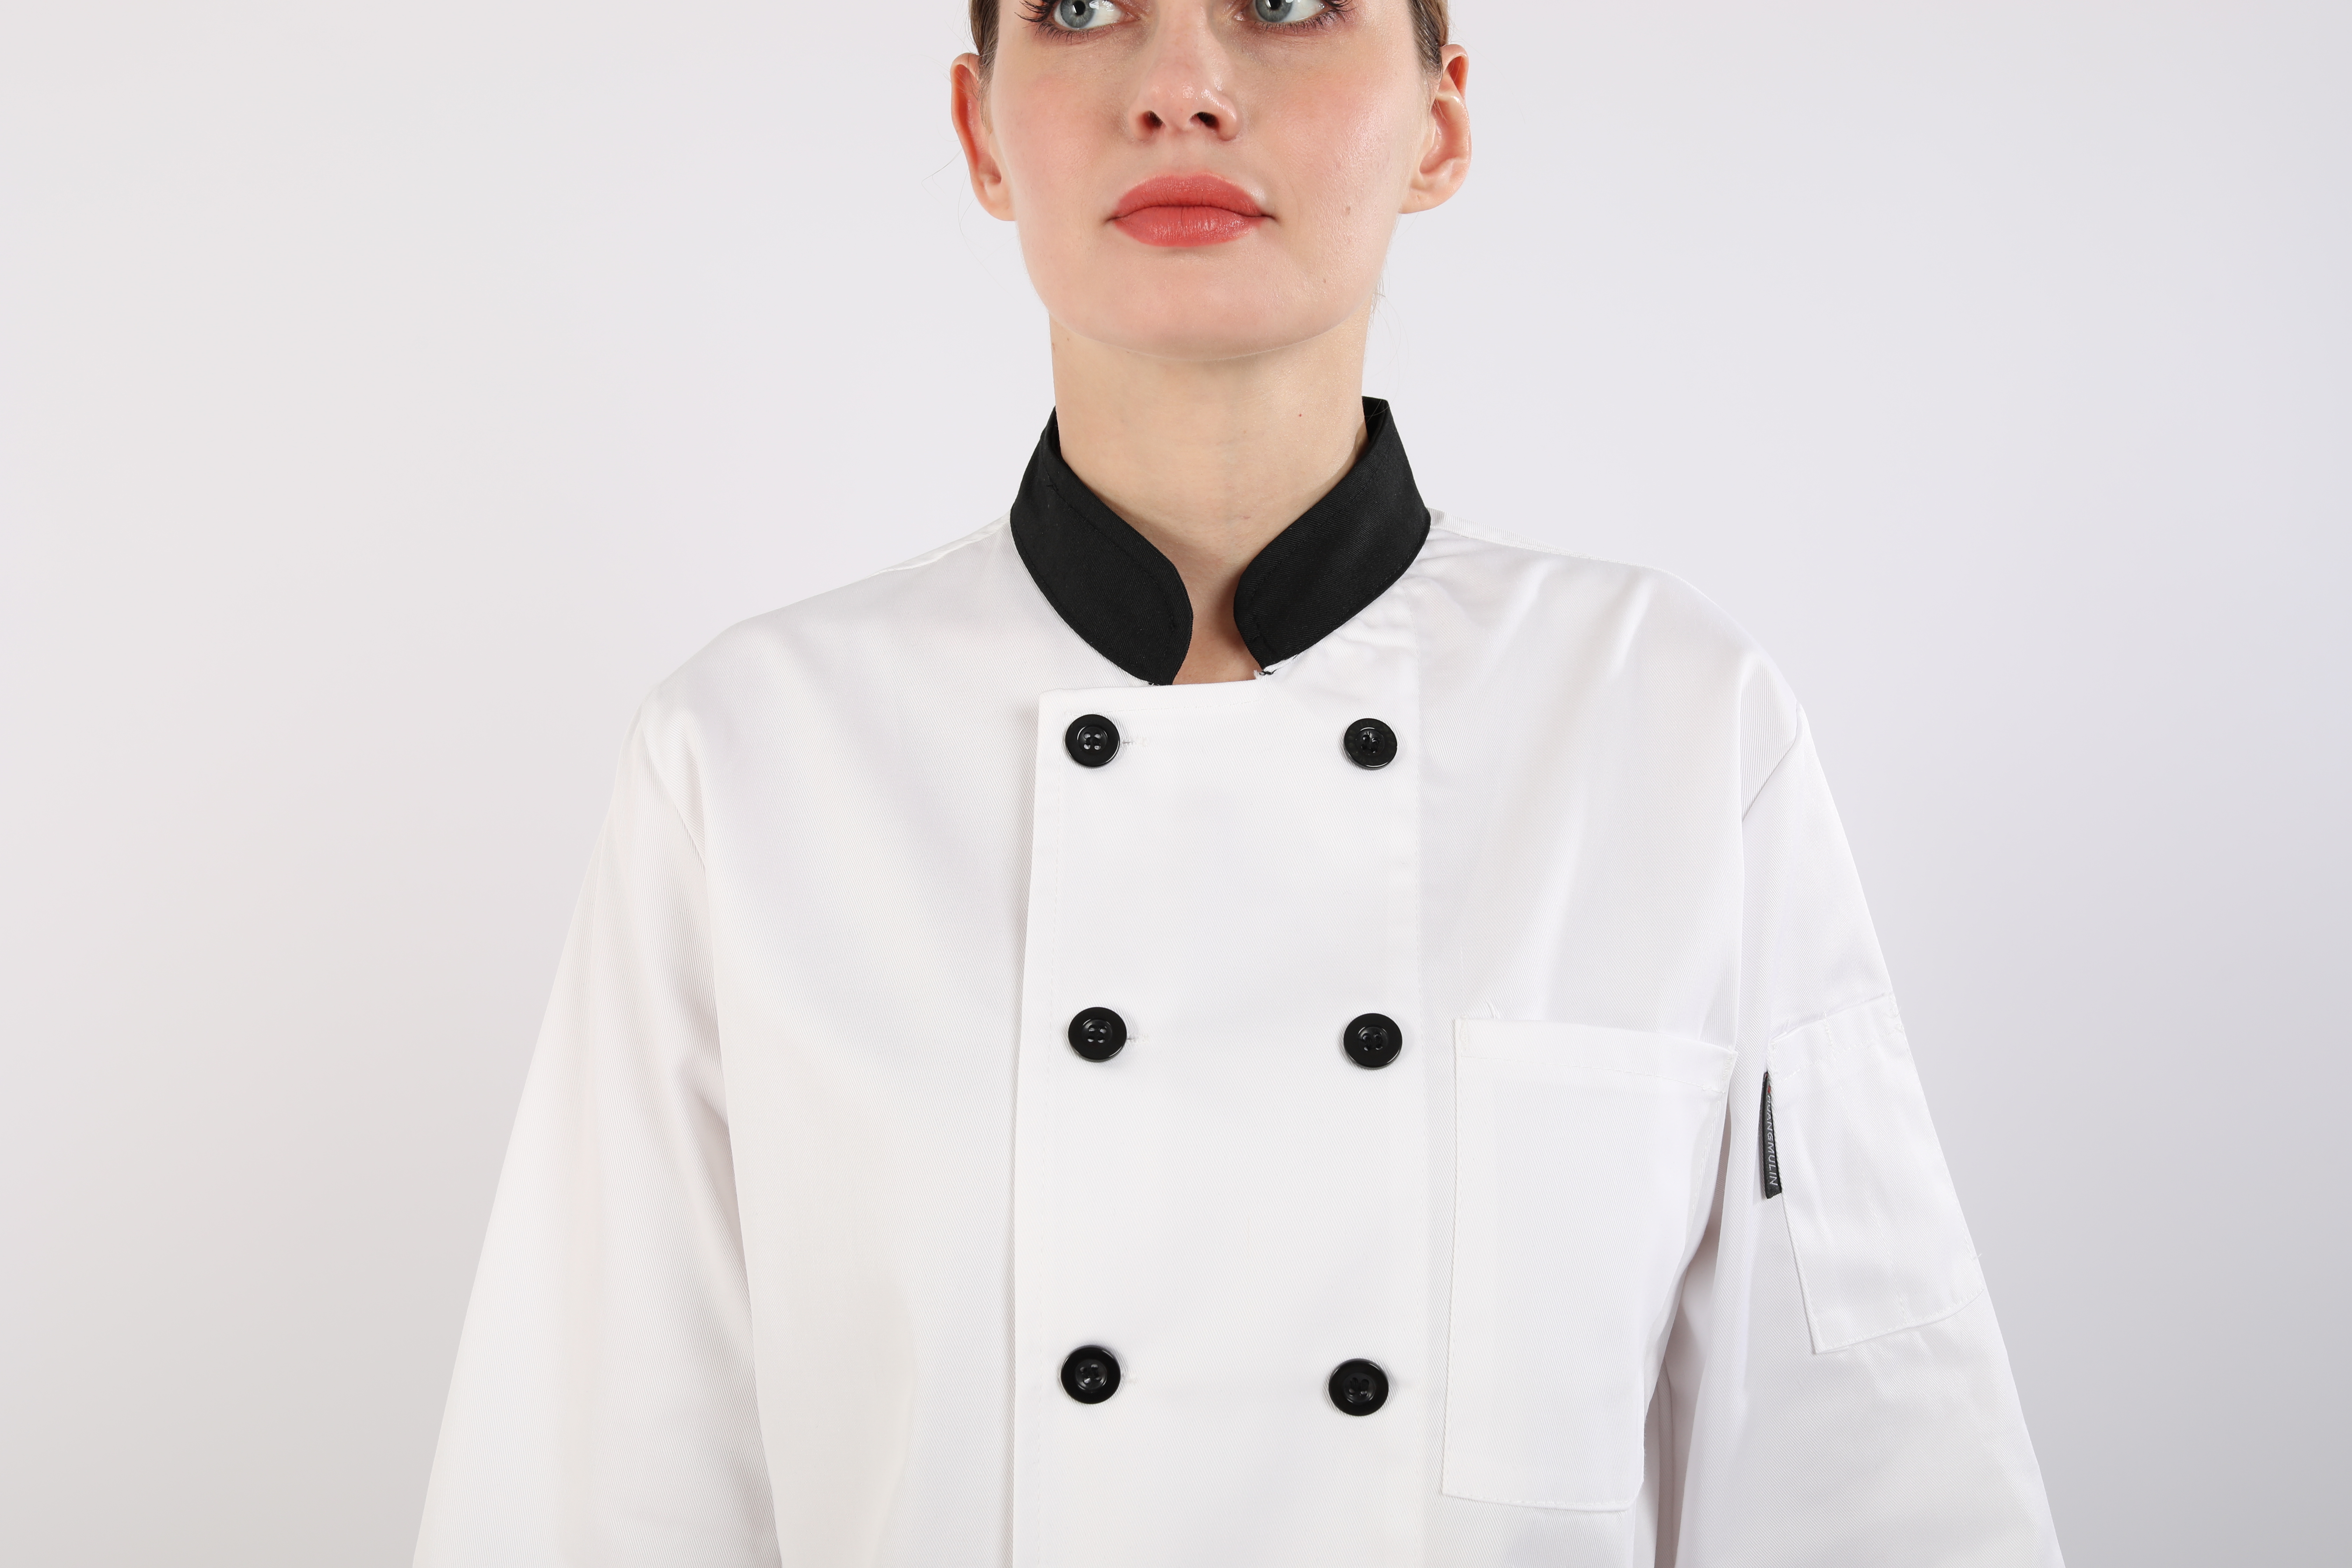 Chef Jacket LG-YBCW-1005